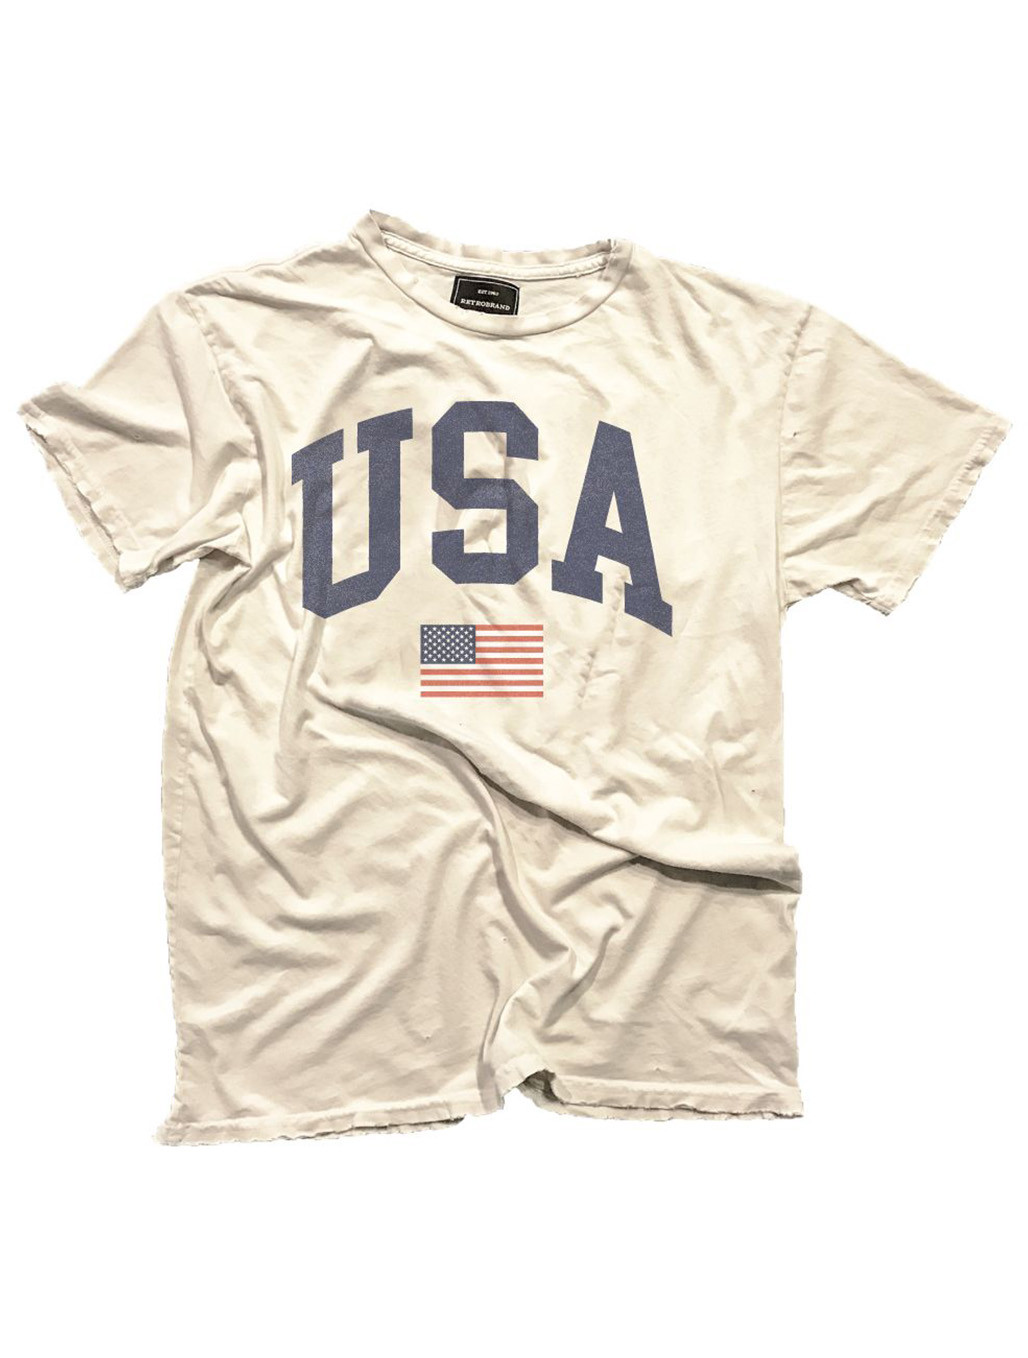 Cotton USA T-Shirt Original Retro Brand